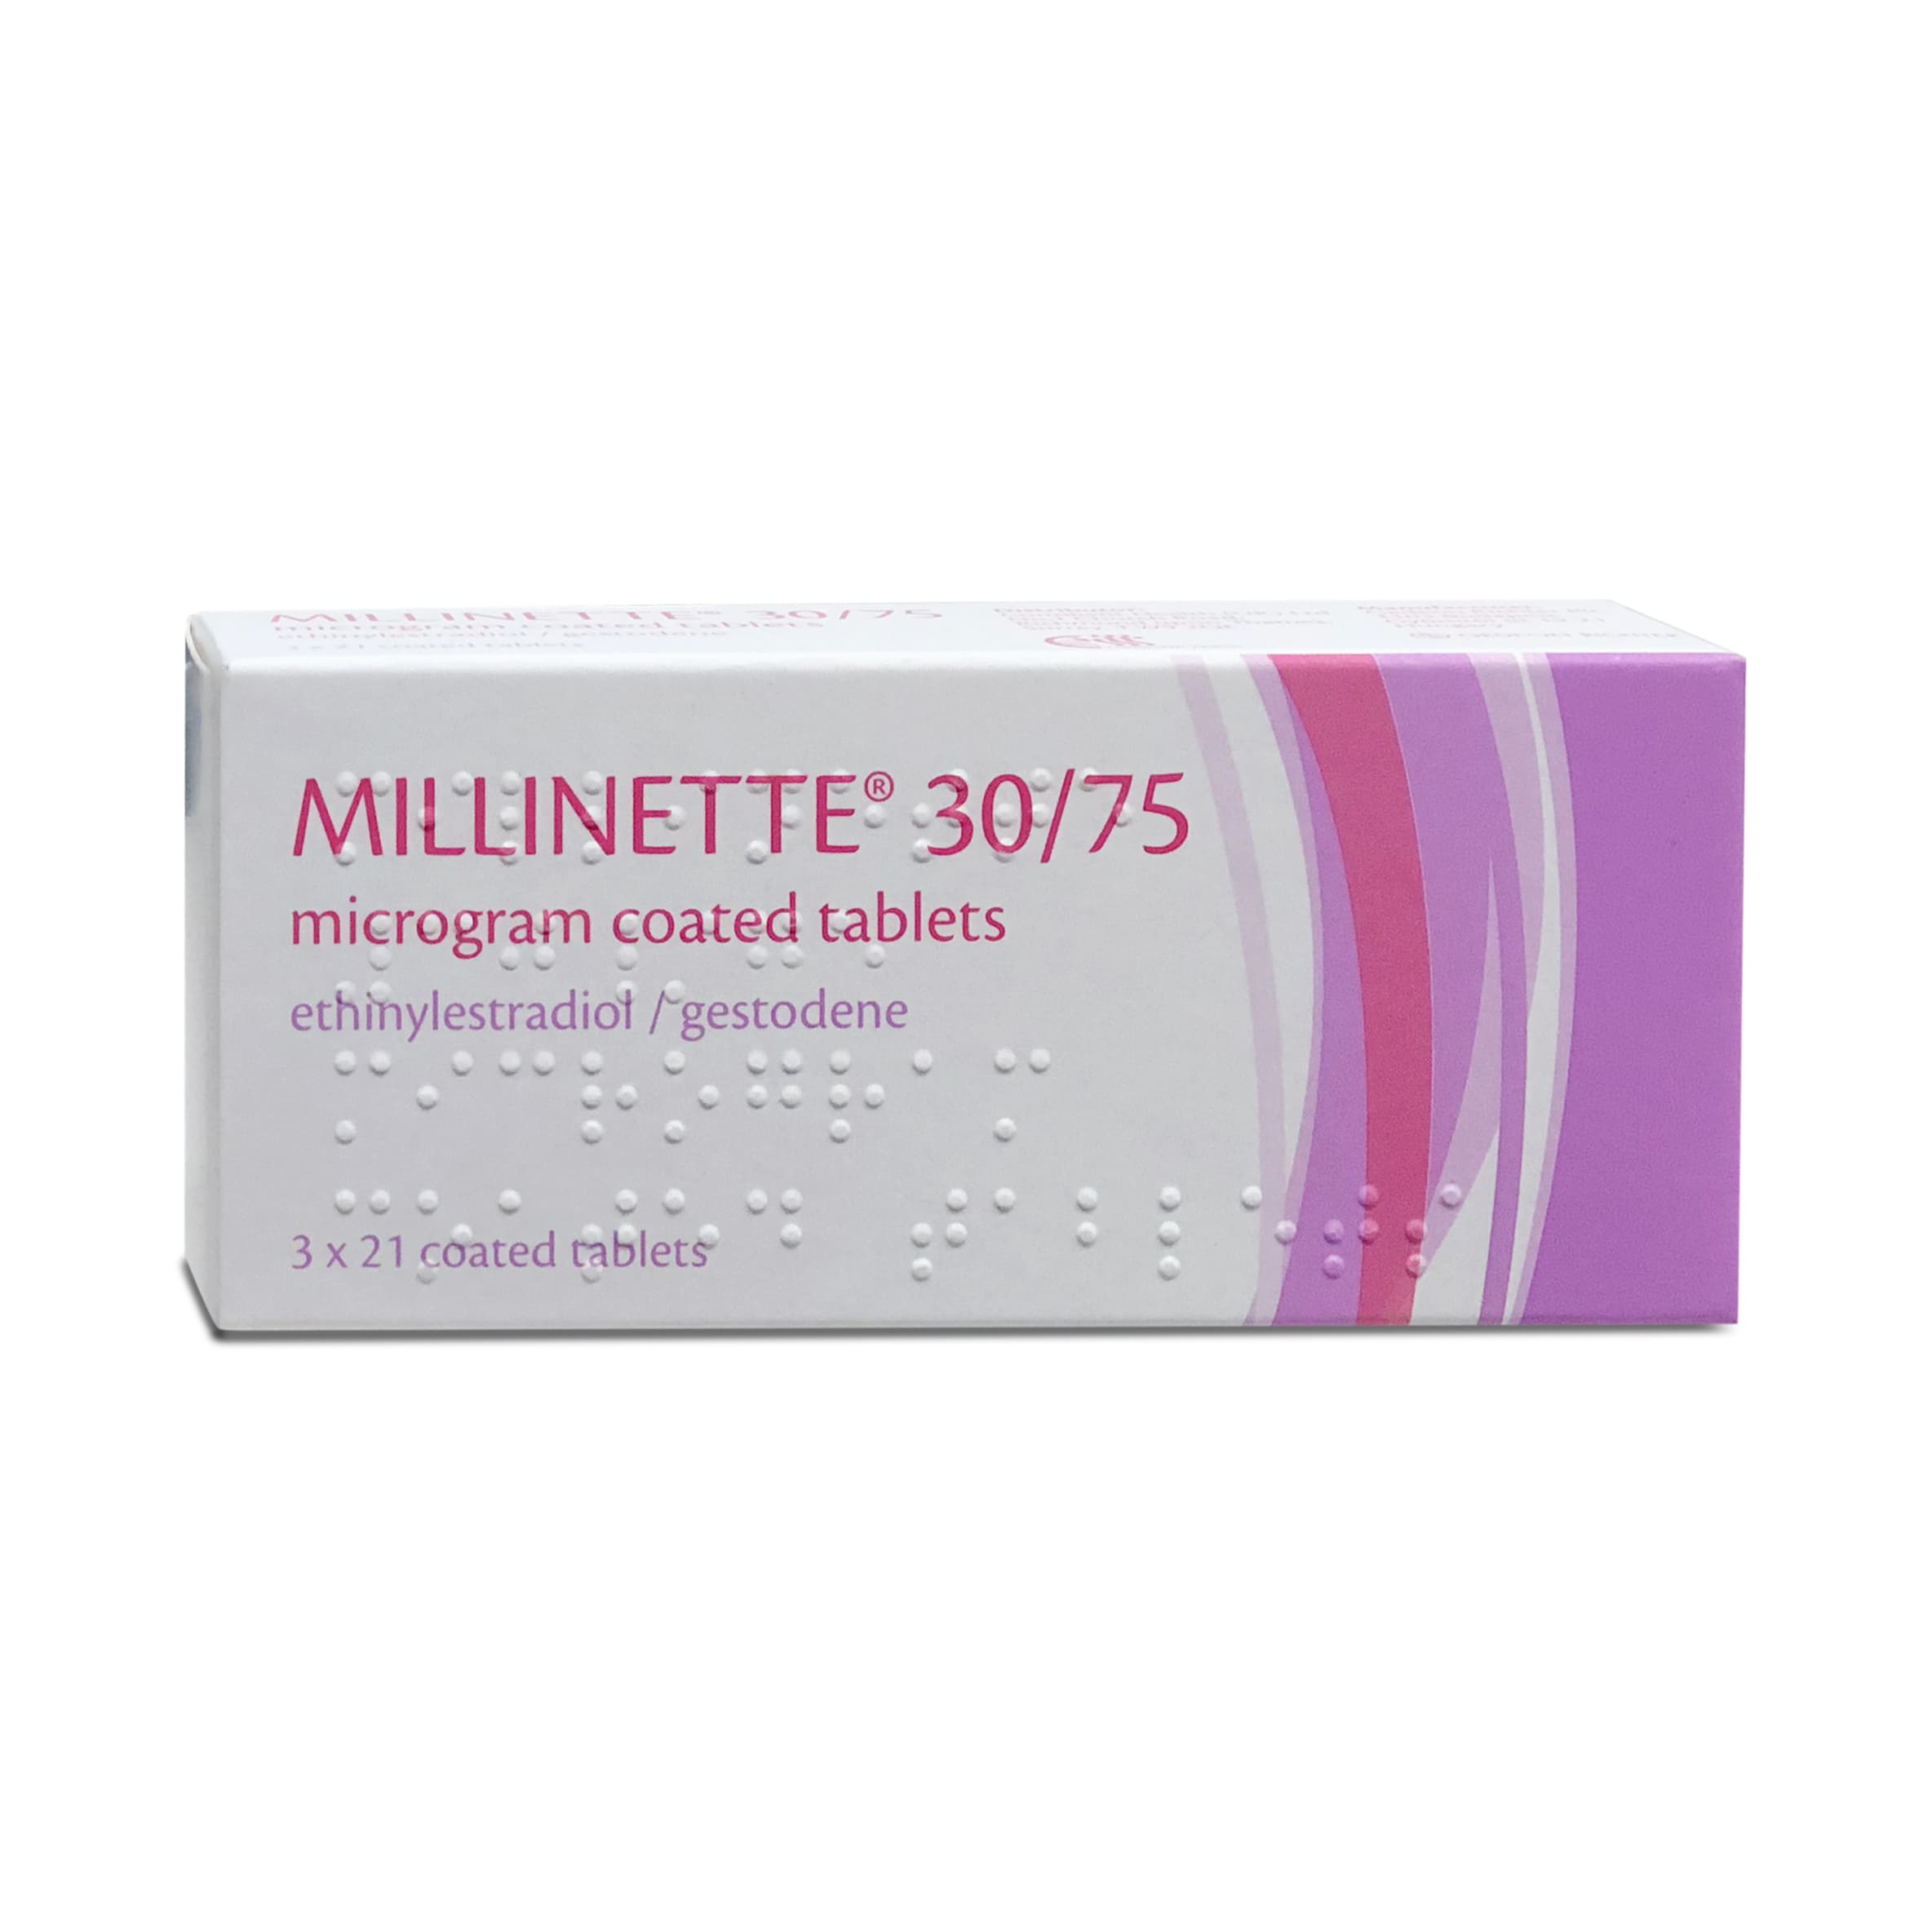 Millinette 30/75mcg 3 x 21 tablets Gedeon Richter pink box